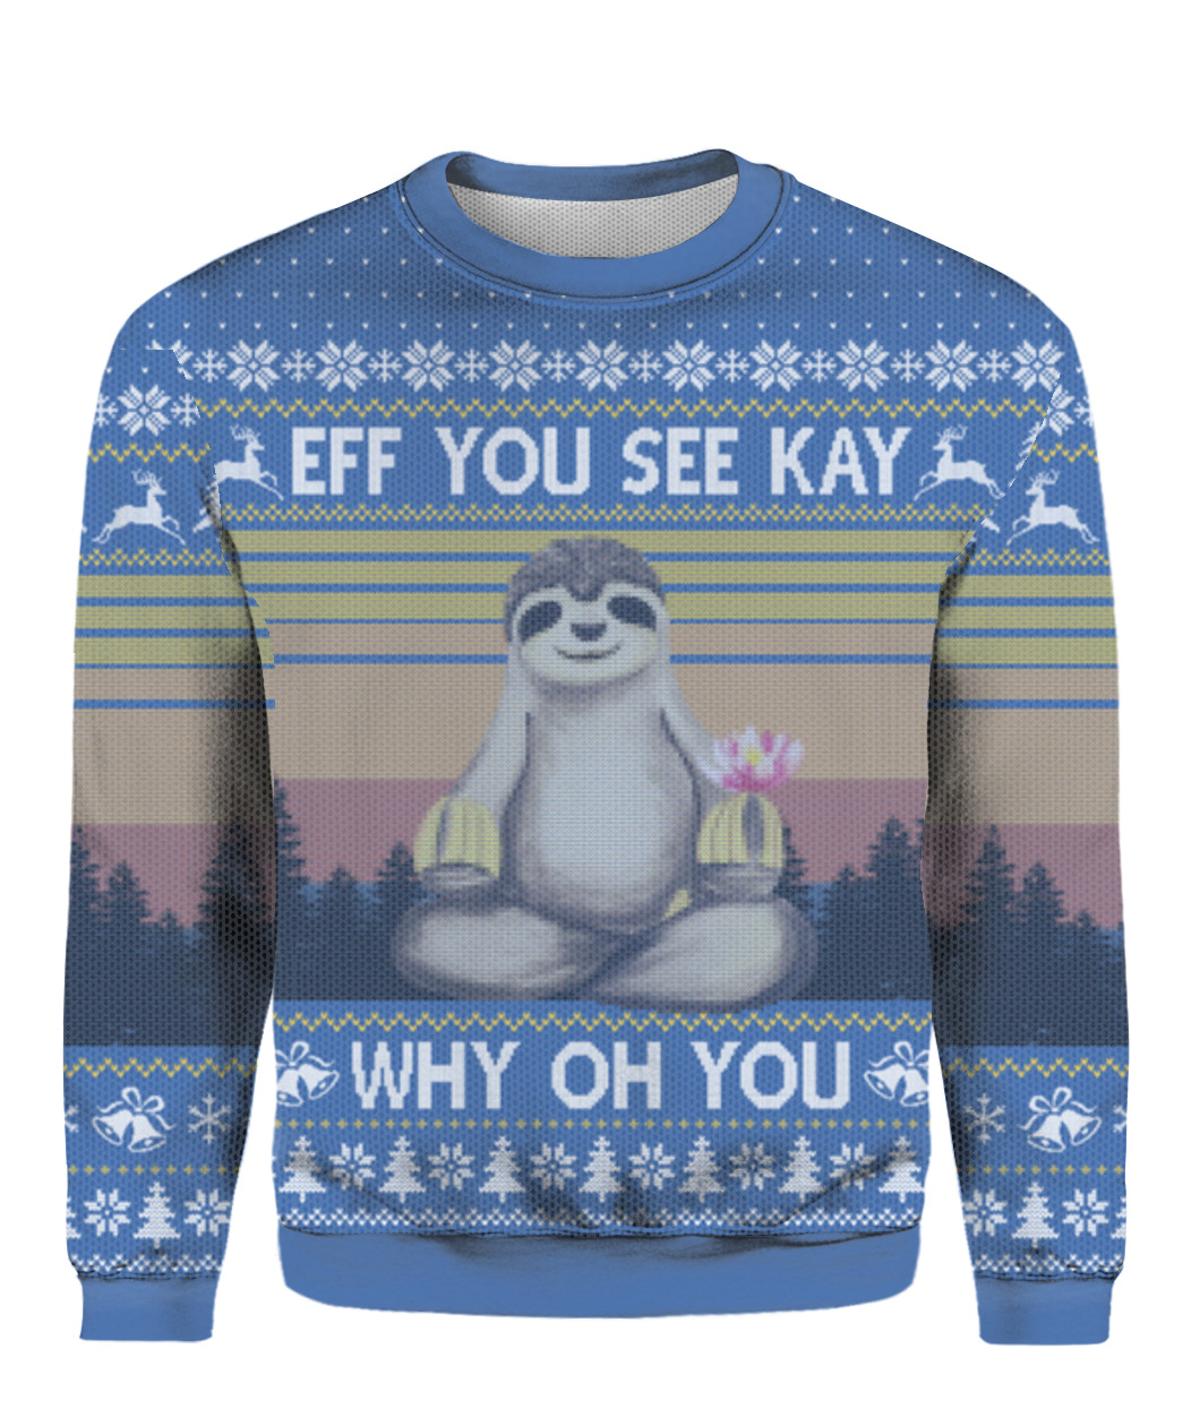 Schitt’s Creek Christmas Sweater